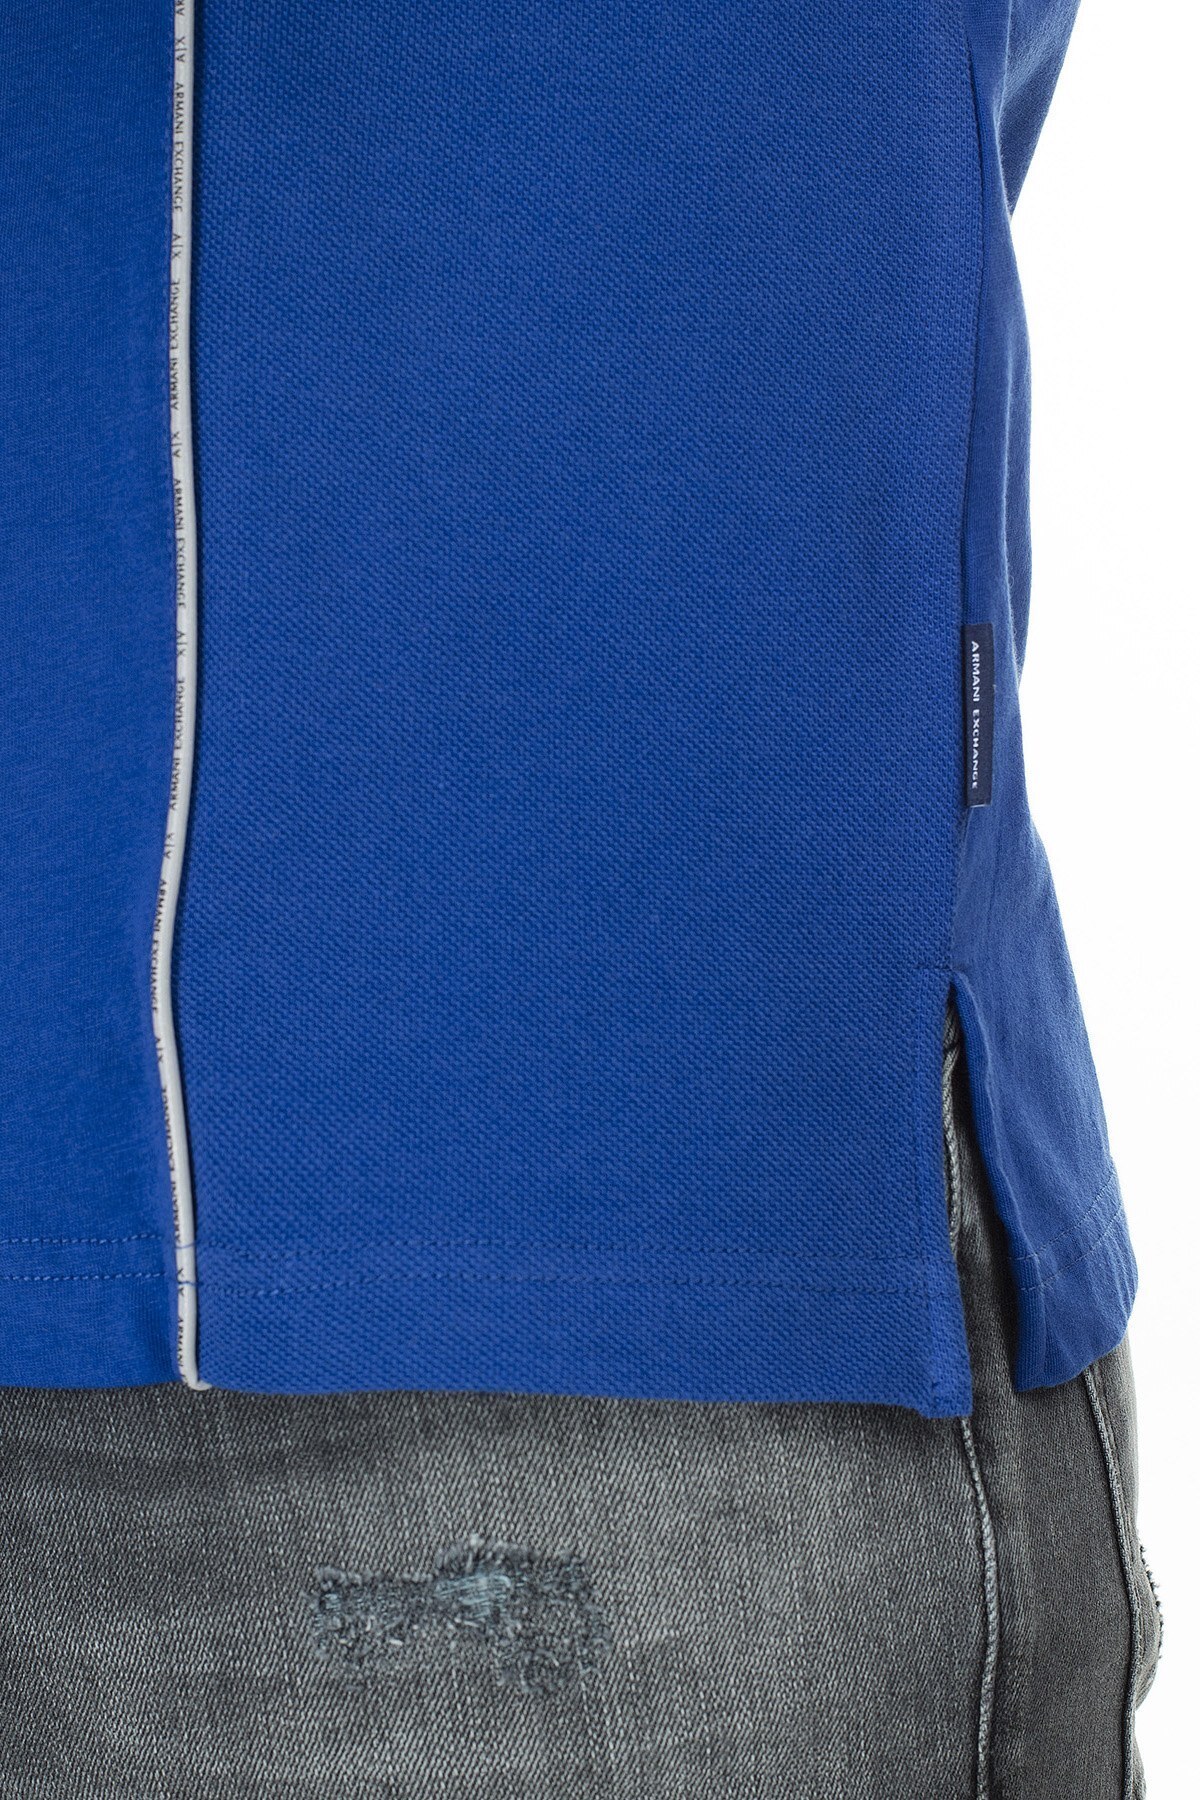 Armani Exchange Logo Baskılı Regular Fit Düğmeli T Shirt Erkek Polo 3HZFGA ZJH4Z 1511 SAKS